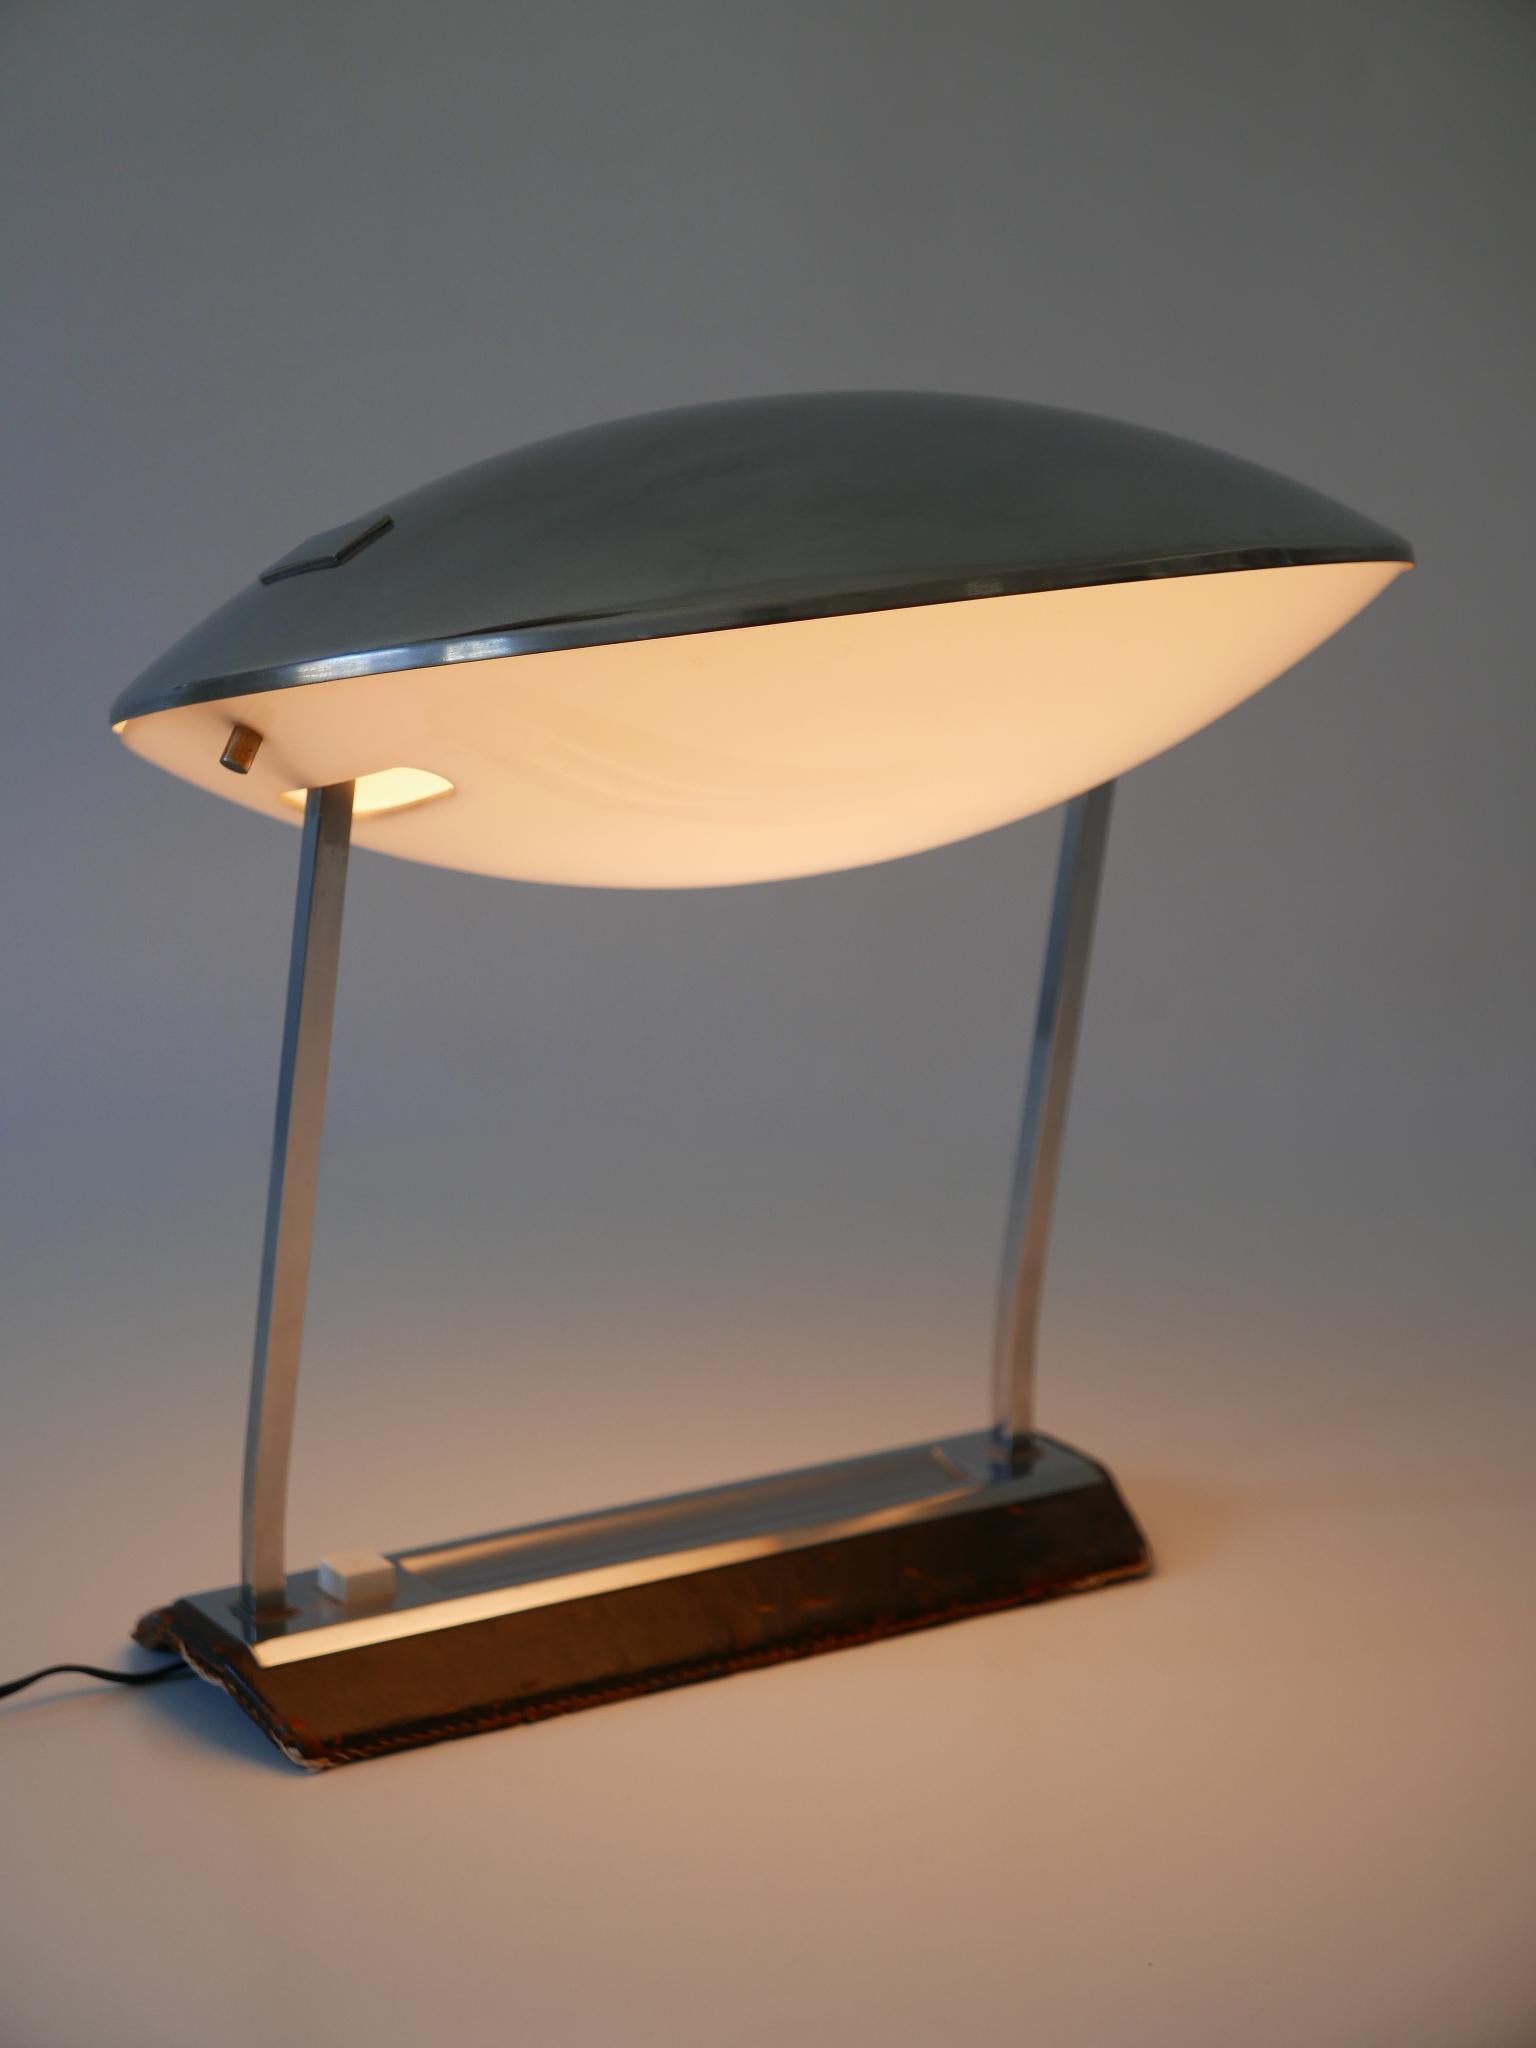 Rare Mid Century Modern Stilnovo Desk Lamp Model 8050 Metalarte 1960s For Sale 4